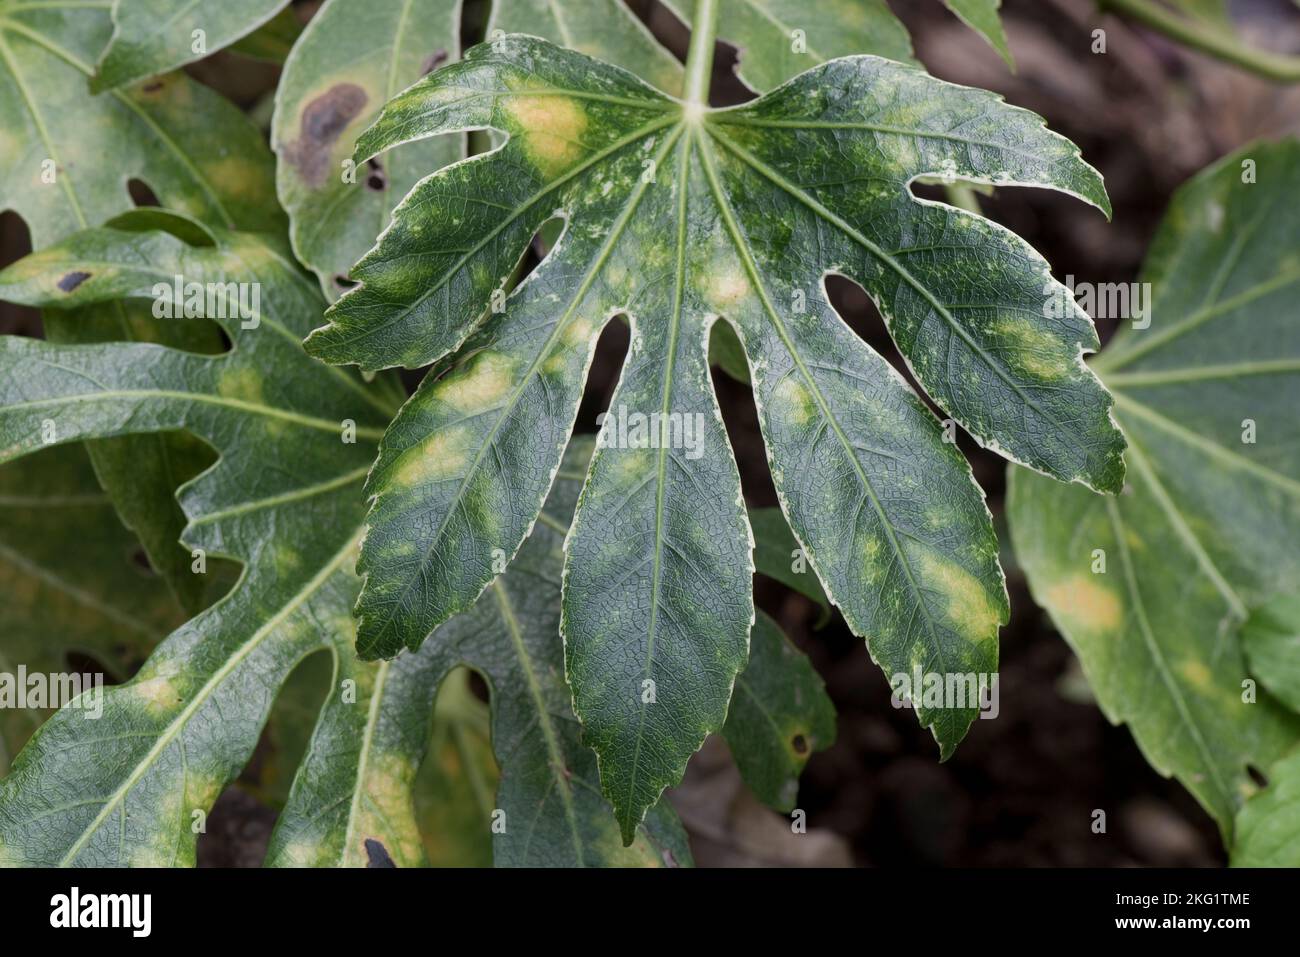 Milbenart erhöhte Blisterschäden an der Oberseite eines Fatsia japonica, einem Garten ornamentalen, bunten Blatt, die genaue Ursache ist nicht bekannt, Oktober Stockfoto